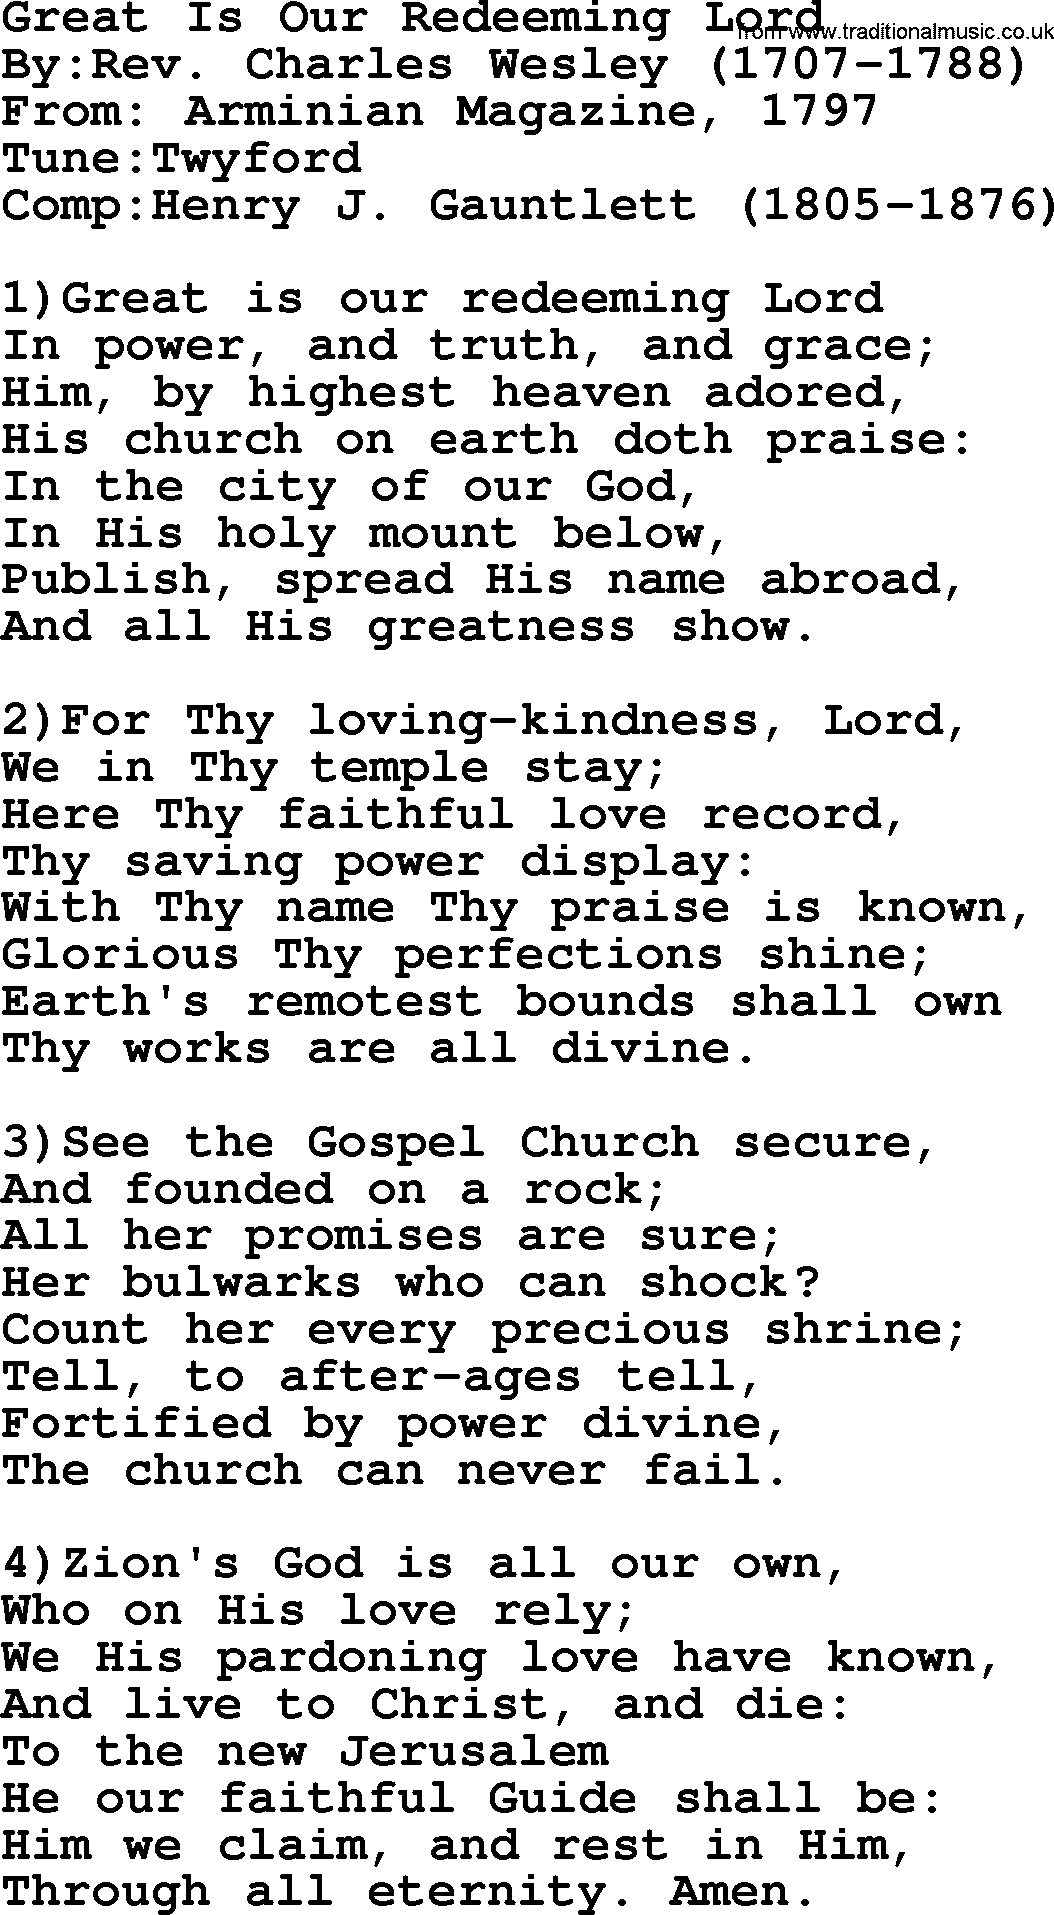 Methodist Hymn: Great Is Our Redeeming Lord, lyrics